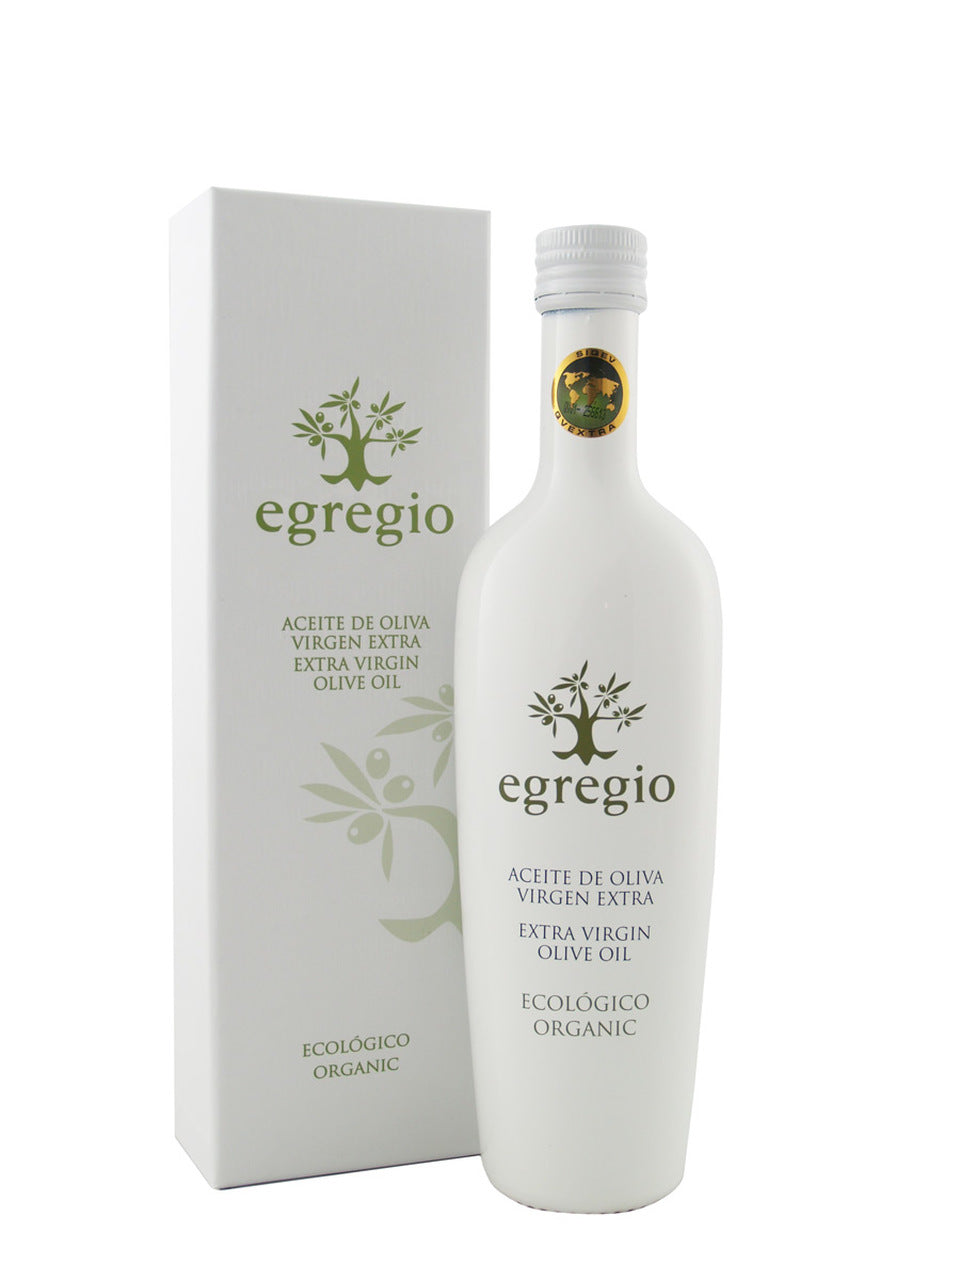 Oleoestepa Egregio Organic 6-Pack 2021 Harvest